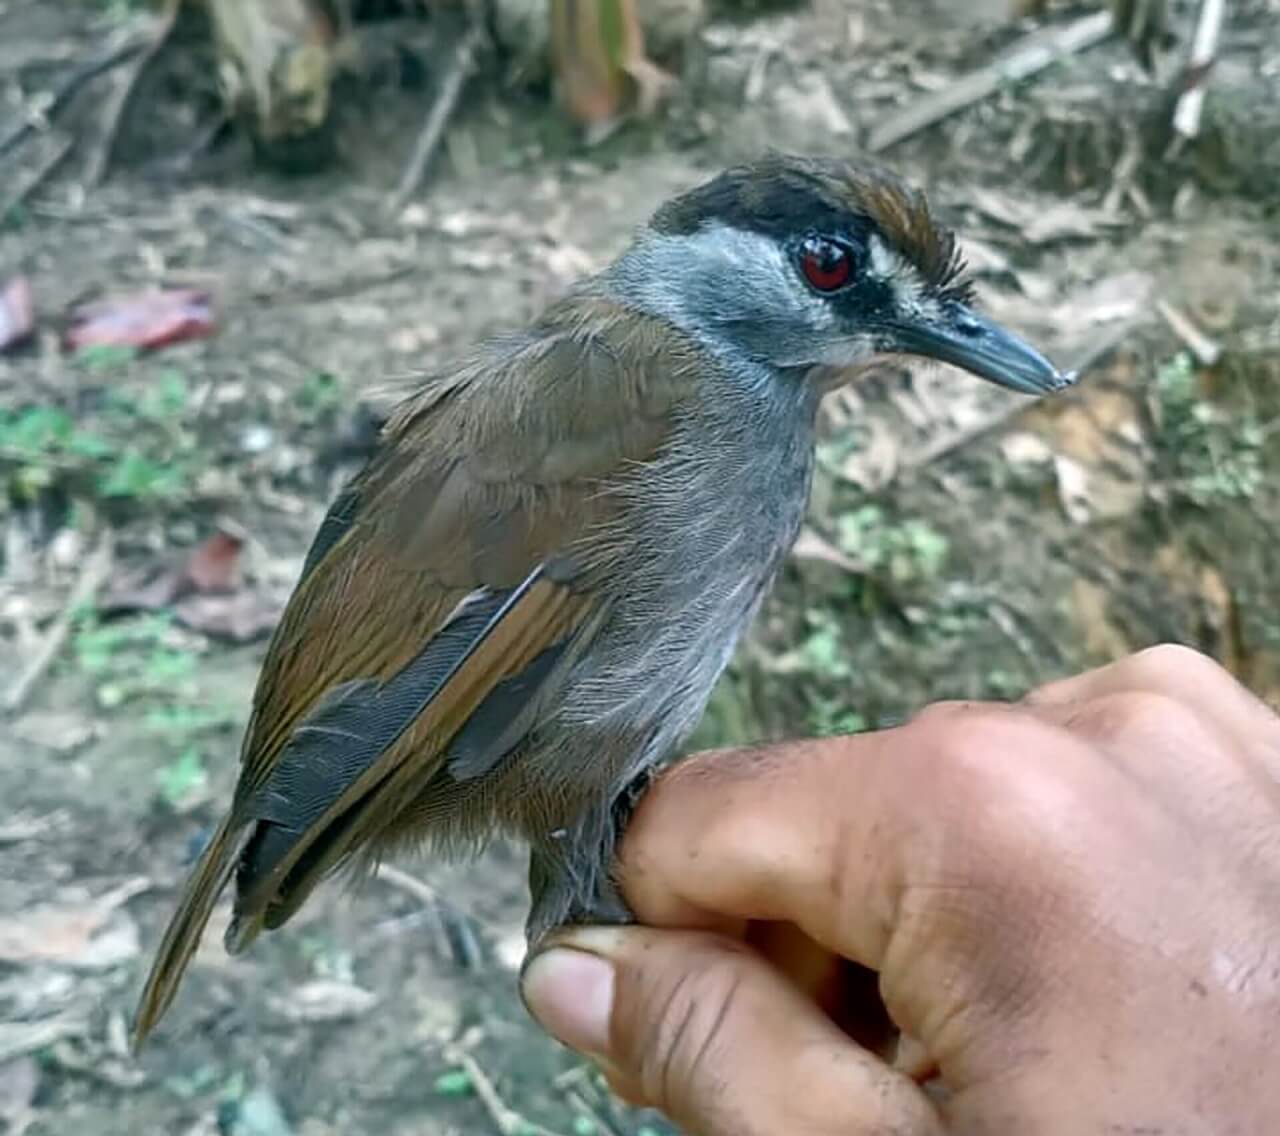 კუნძულ ბორნეოზე აღმოაჩინეს ჩიტი, რომელიც გადაშენებული გვეგონა — #1tvმეცნიერება